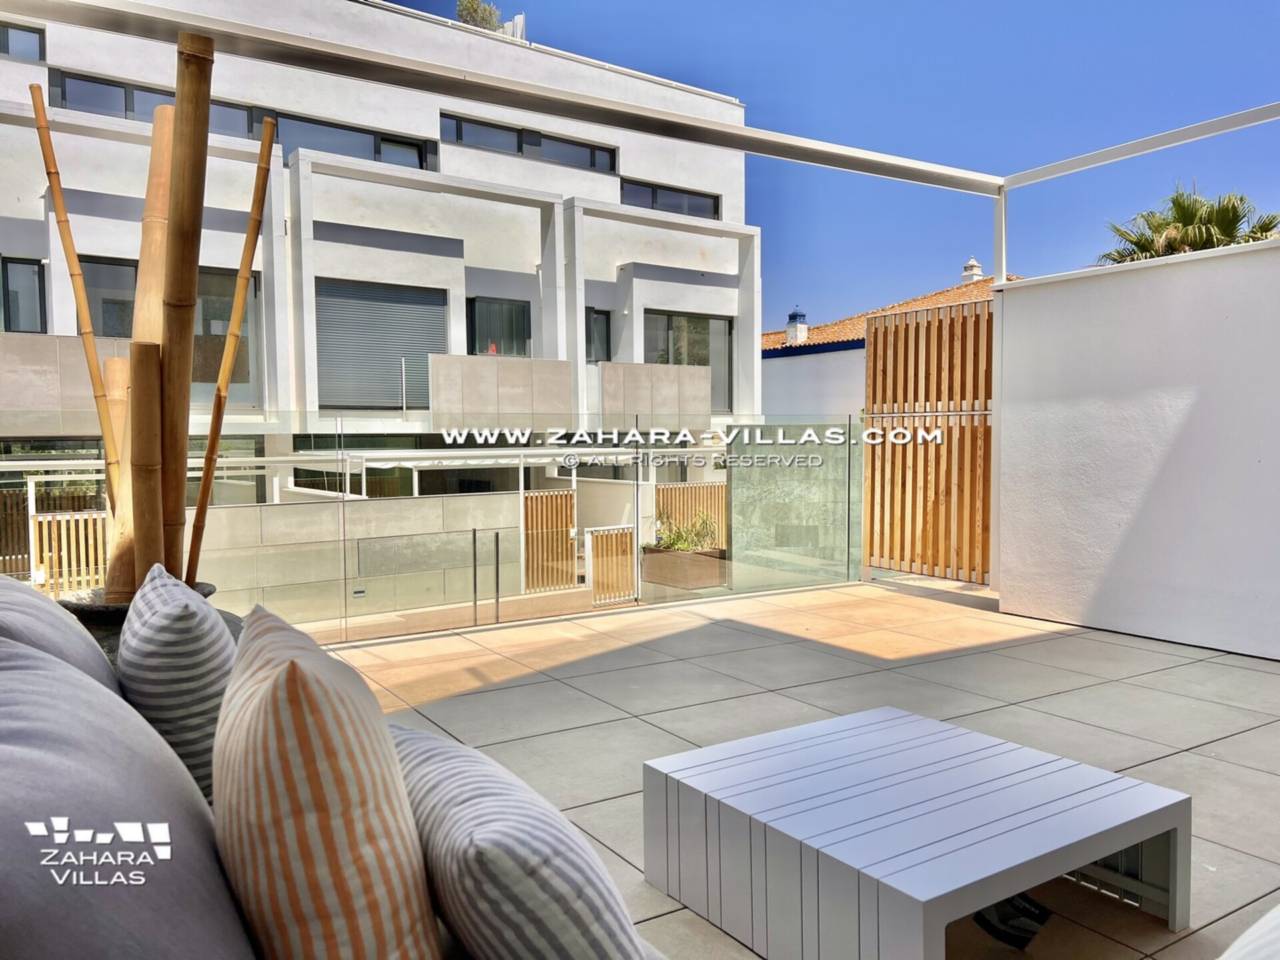 Imagen 2 de  Promoción obra nueva terminada "EL OASIS DE ZAHARA" viviendas adosadas junto al mar